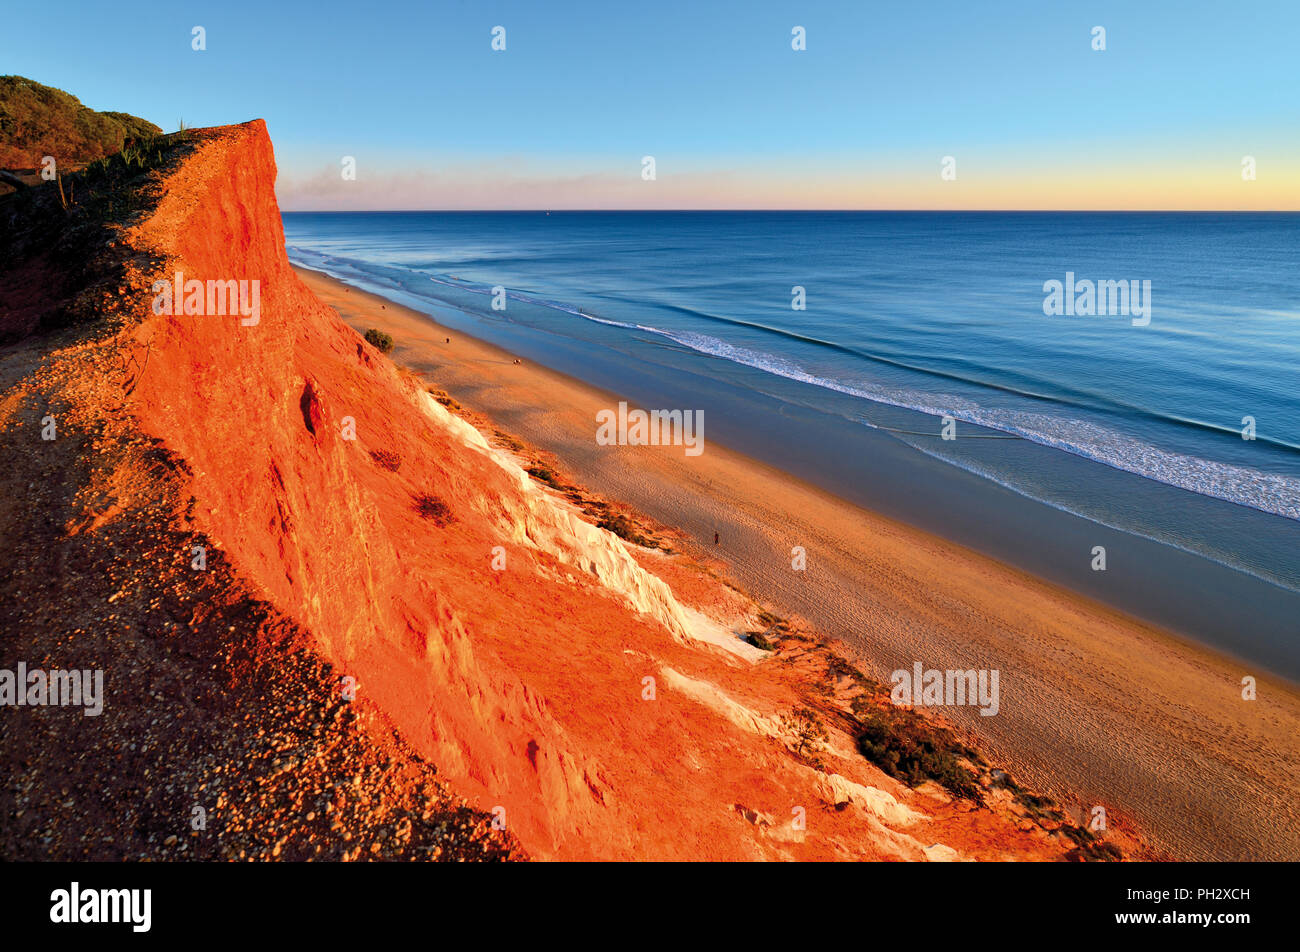 Soirée à l'atmosphère pittoresque de long plage de sable avec du sable rouge des falaises et l'océan calme Banque D'Images